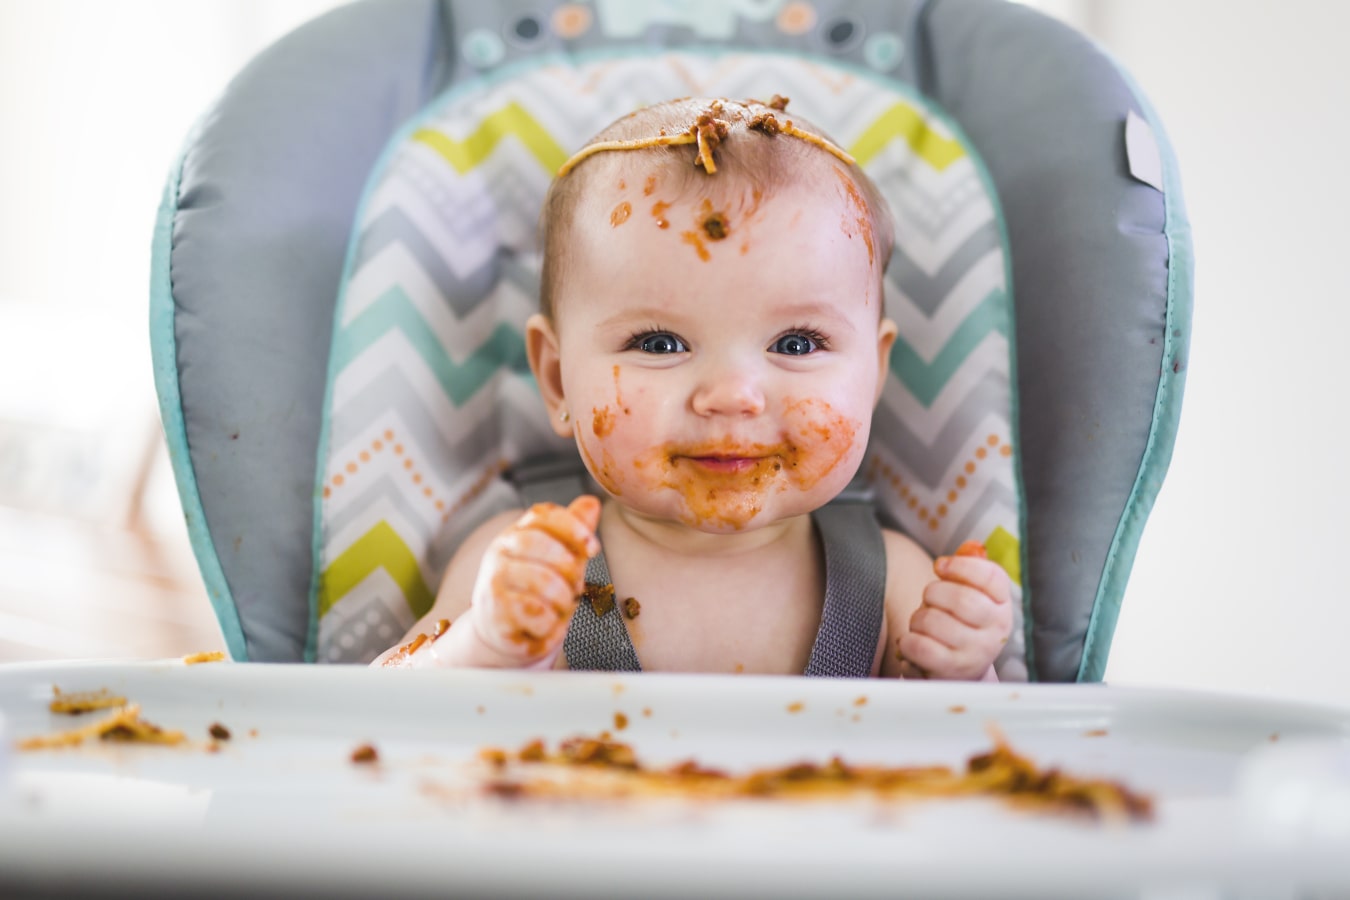 Brudne od spaghetti dziecko siedzi zapięte w krzesełku do karmienia. Jest szczęśliwe i się uśmiecha, na nim i na tacce jest pełno jedzenia.